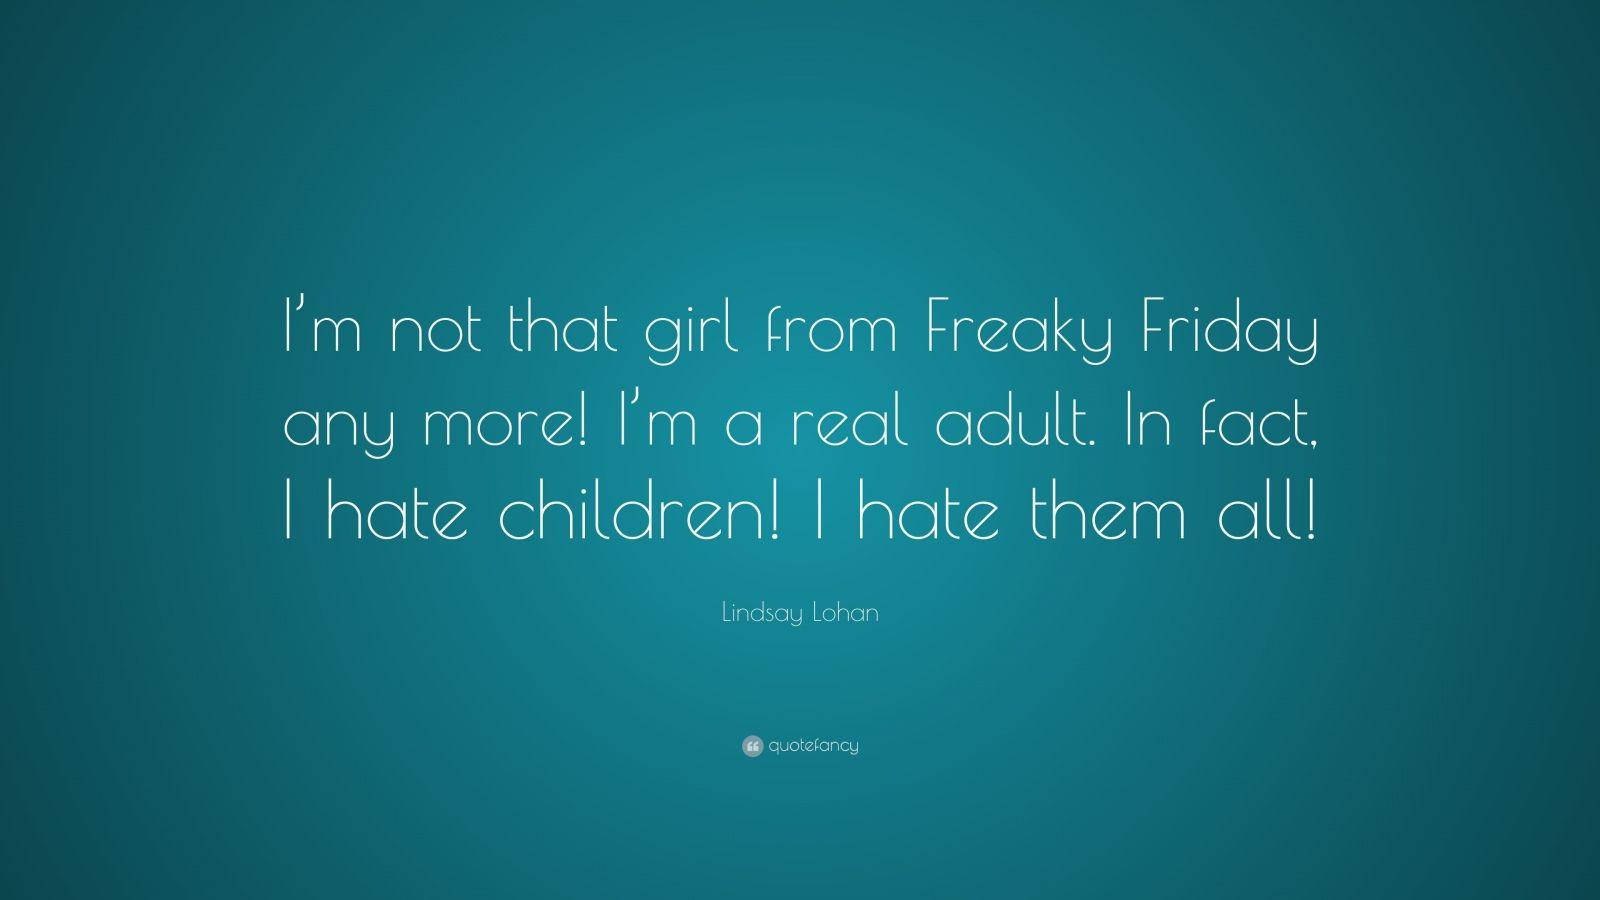 Freaky Friday Lindsay Lohan Quotation